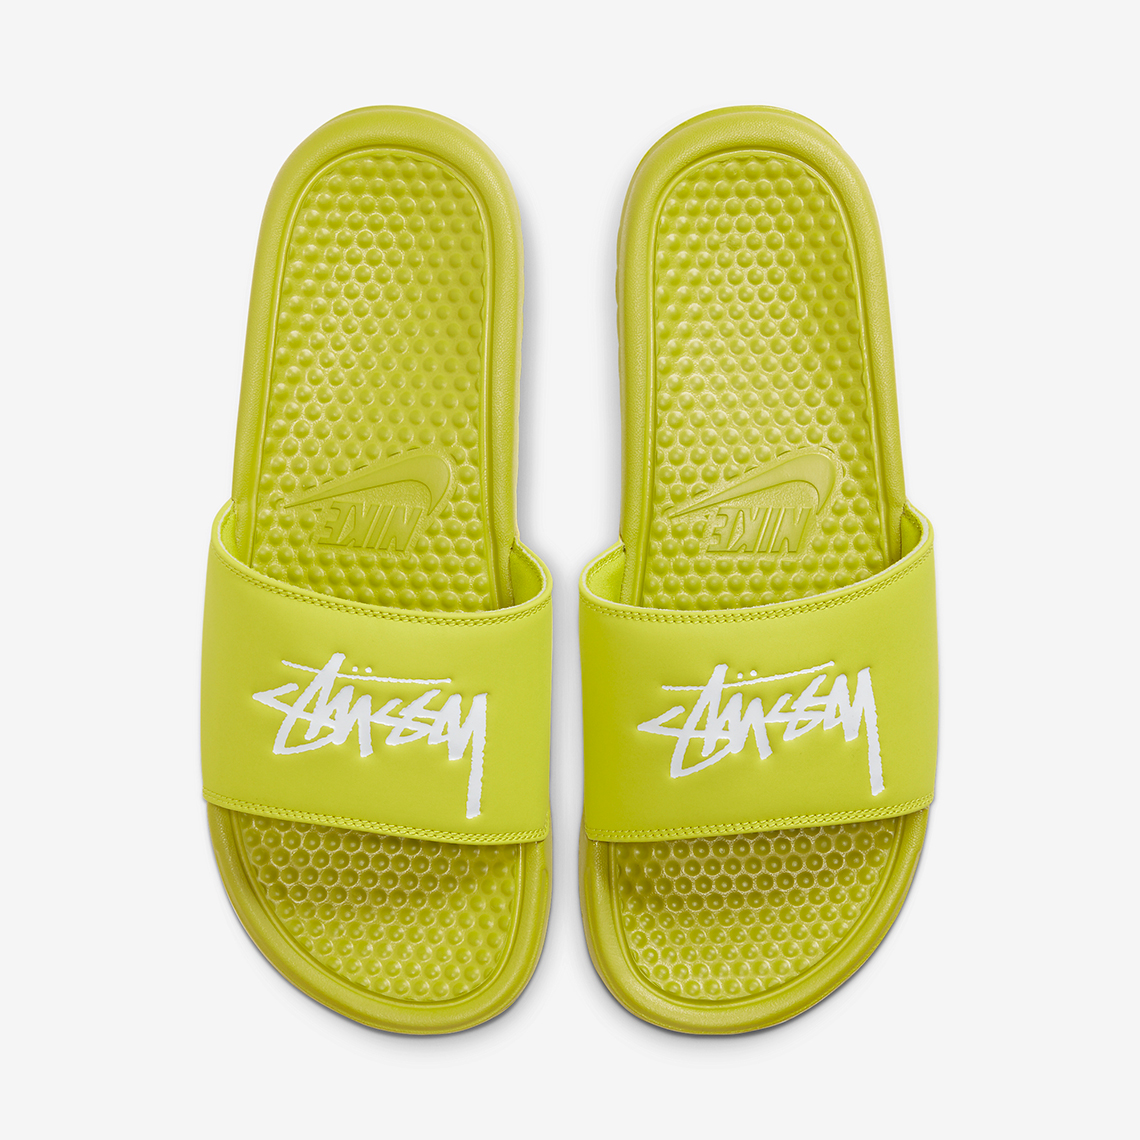 Stussy Nike Benassi Slide Volt Cw2787 300 1